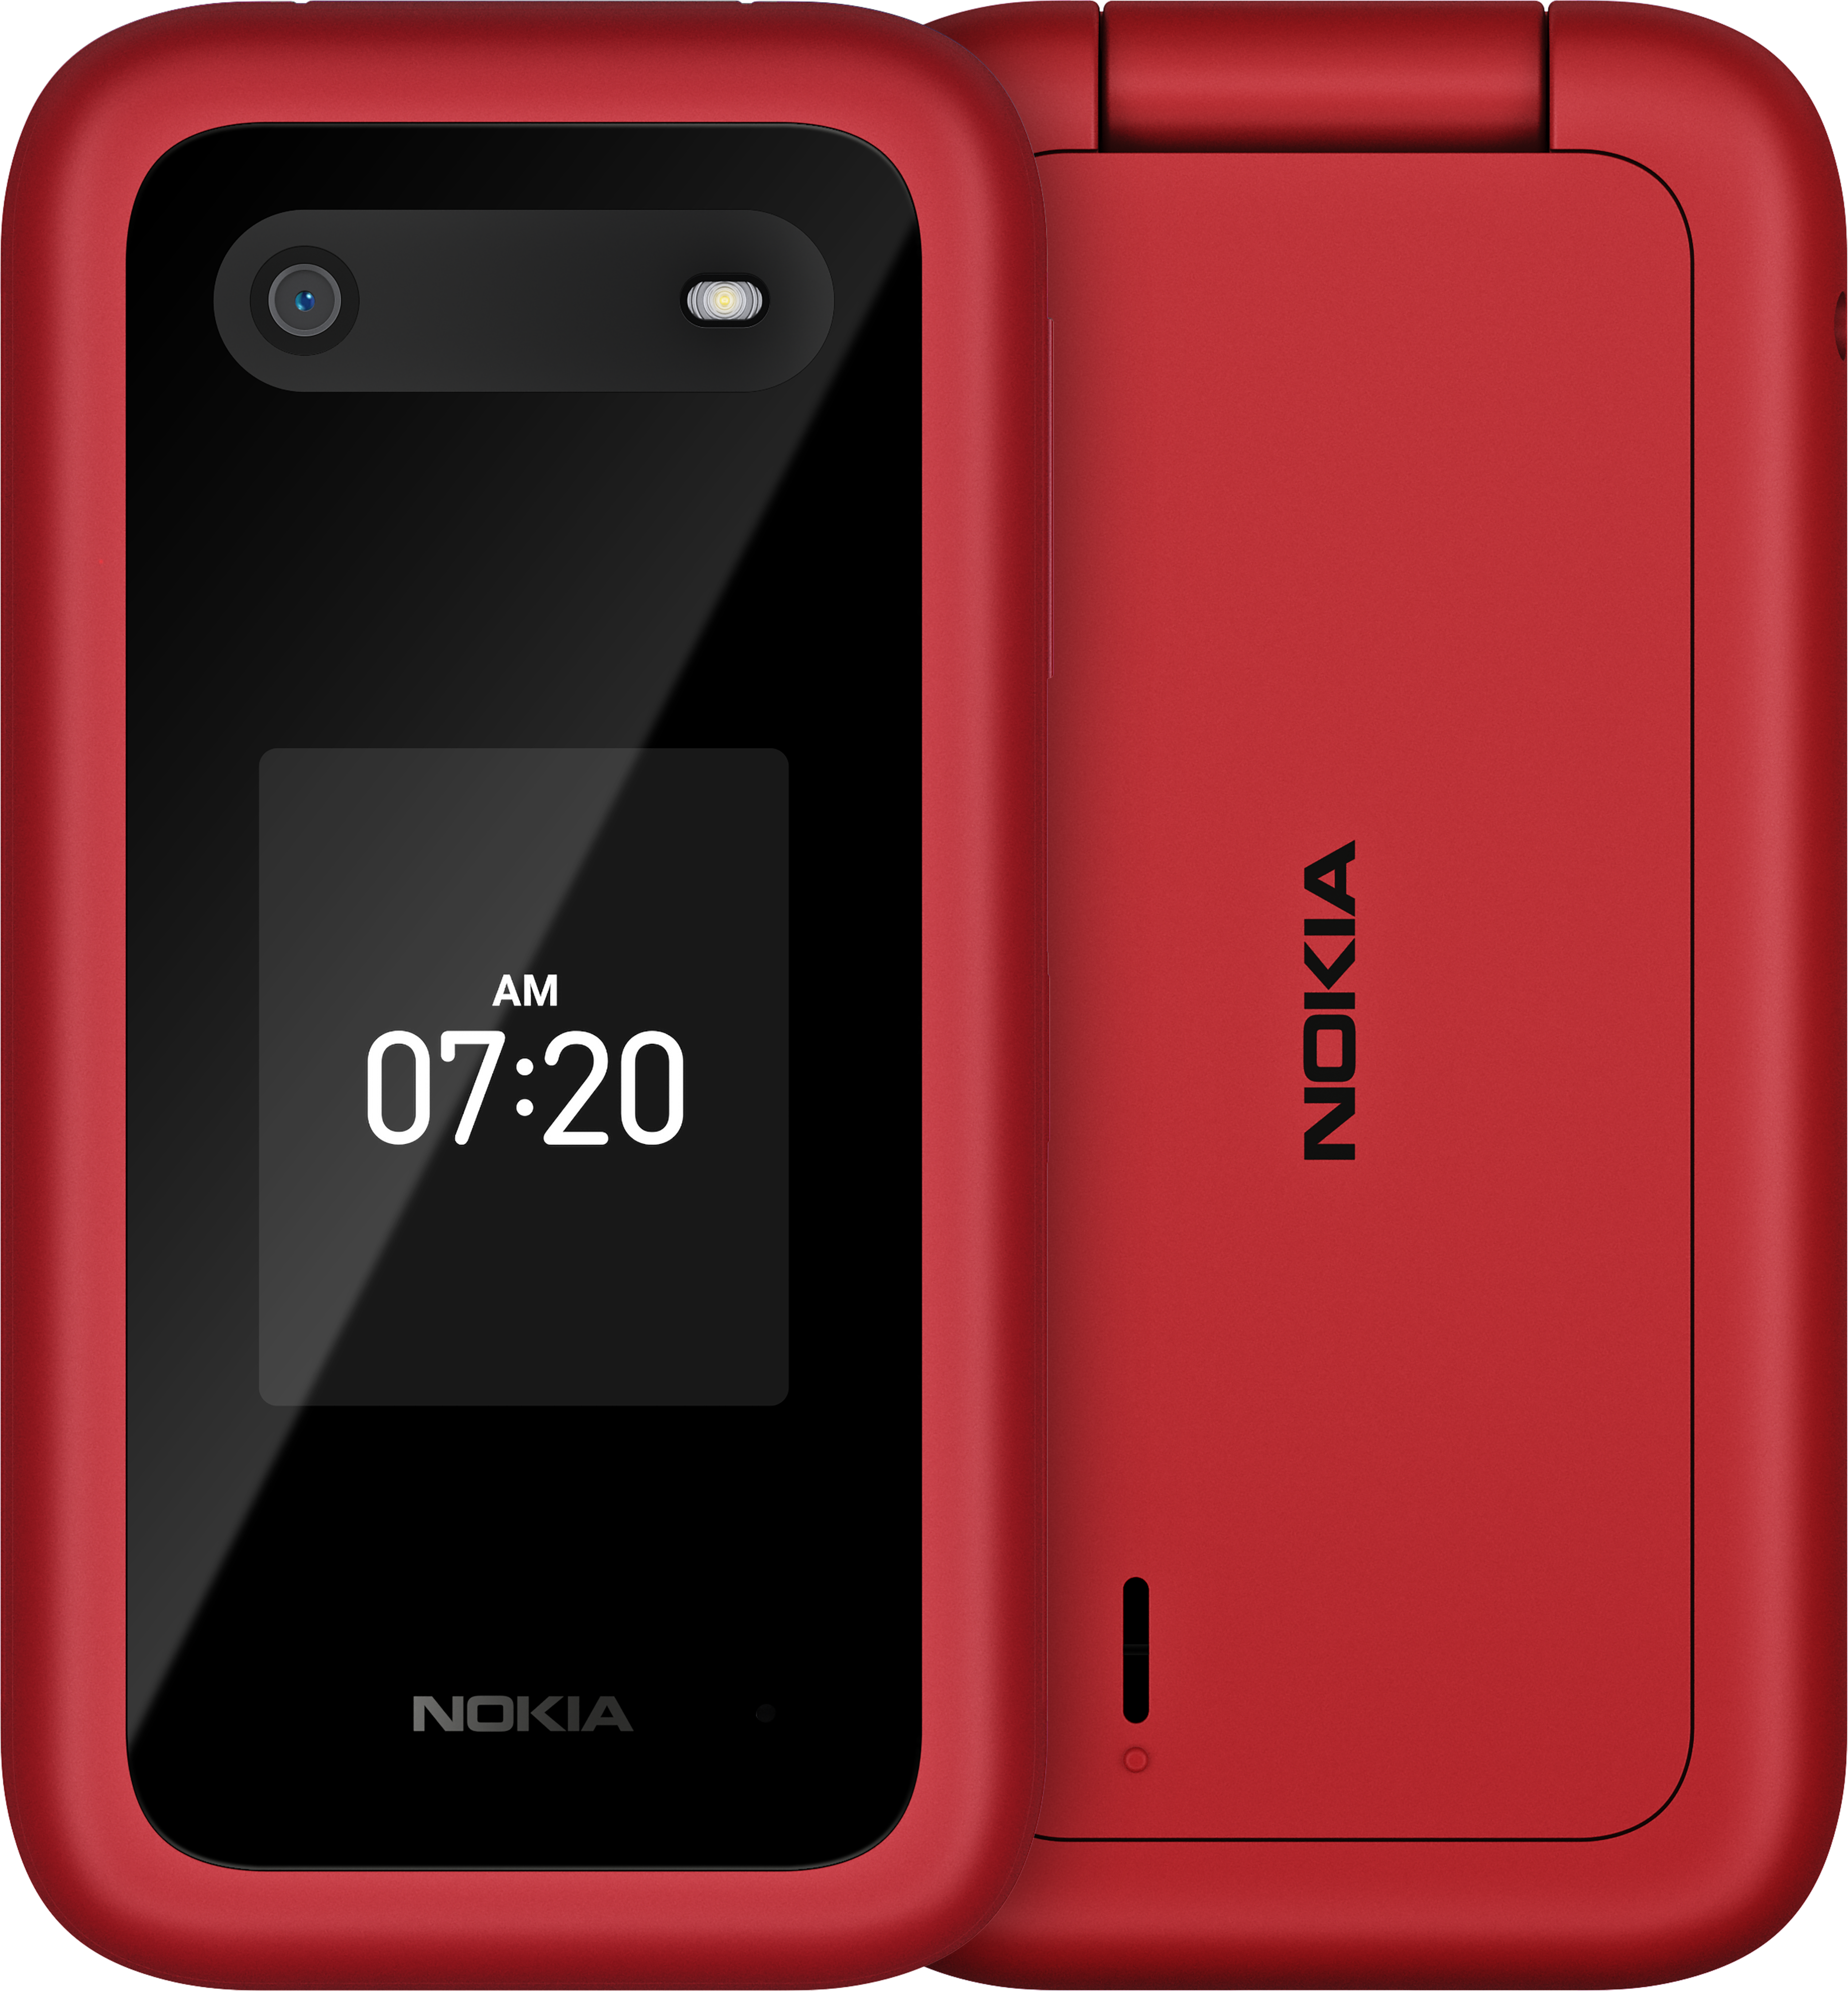 Danh mục điện thoại cơ bản Nokia đầy đủ nhất đang chờ đón bạn. Với nhiều mẫu mã và chủng loại khác nhau, bạn sẽ tìm thấy chiếc điện thoại phù hợp với nhu cầu của mình. Hãy truy cập vào hình ảnh để xem danh mục điện thoại cơ bản Nokia và tìm cho mình chiếc điện thoại ưng ý nhất.